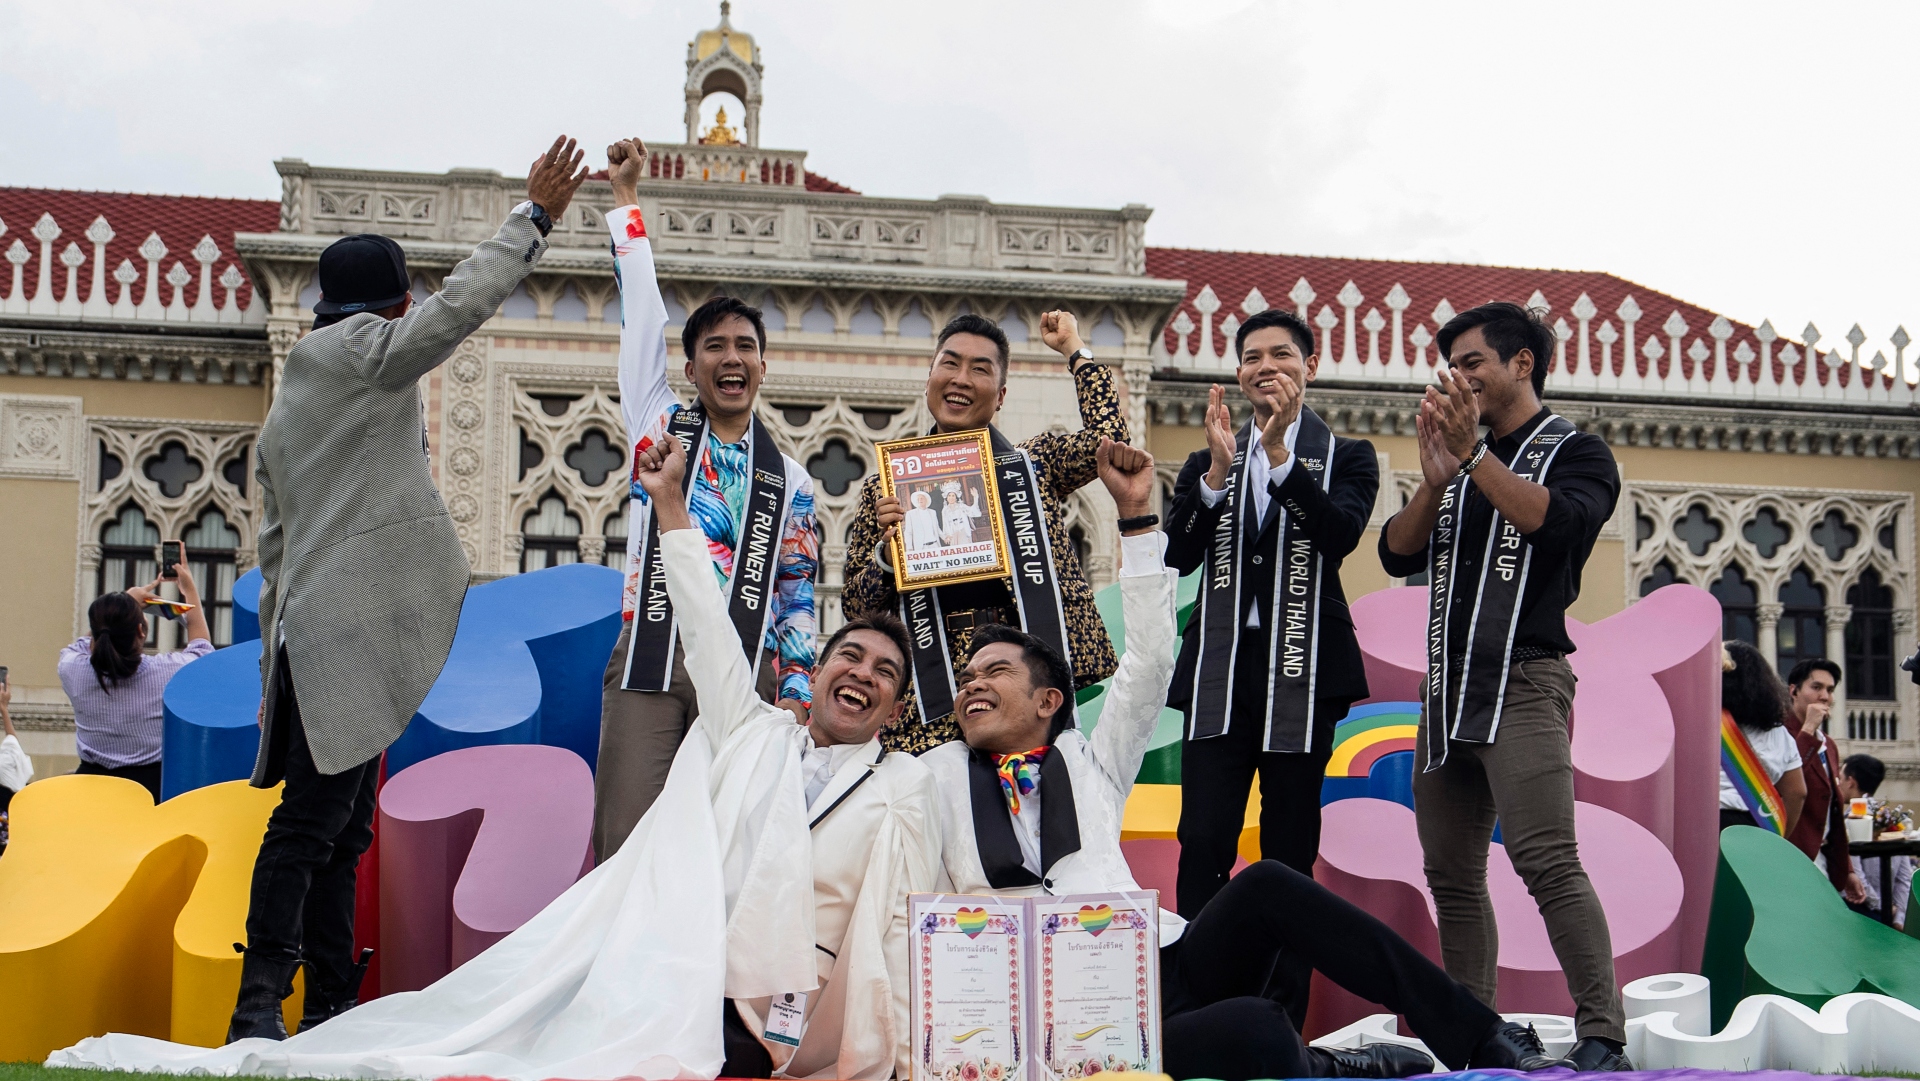 Tailandia hacia la igualdad en la diversidad